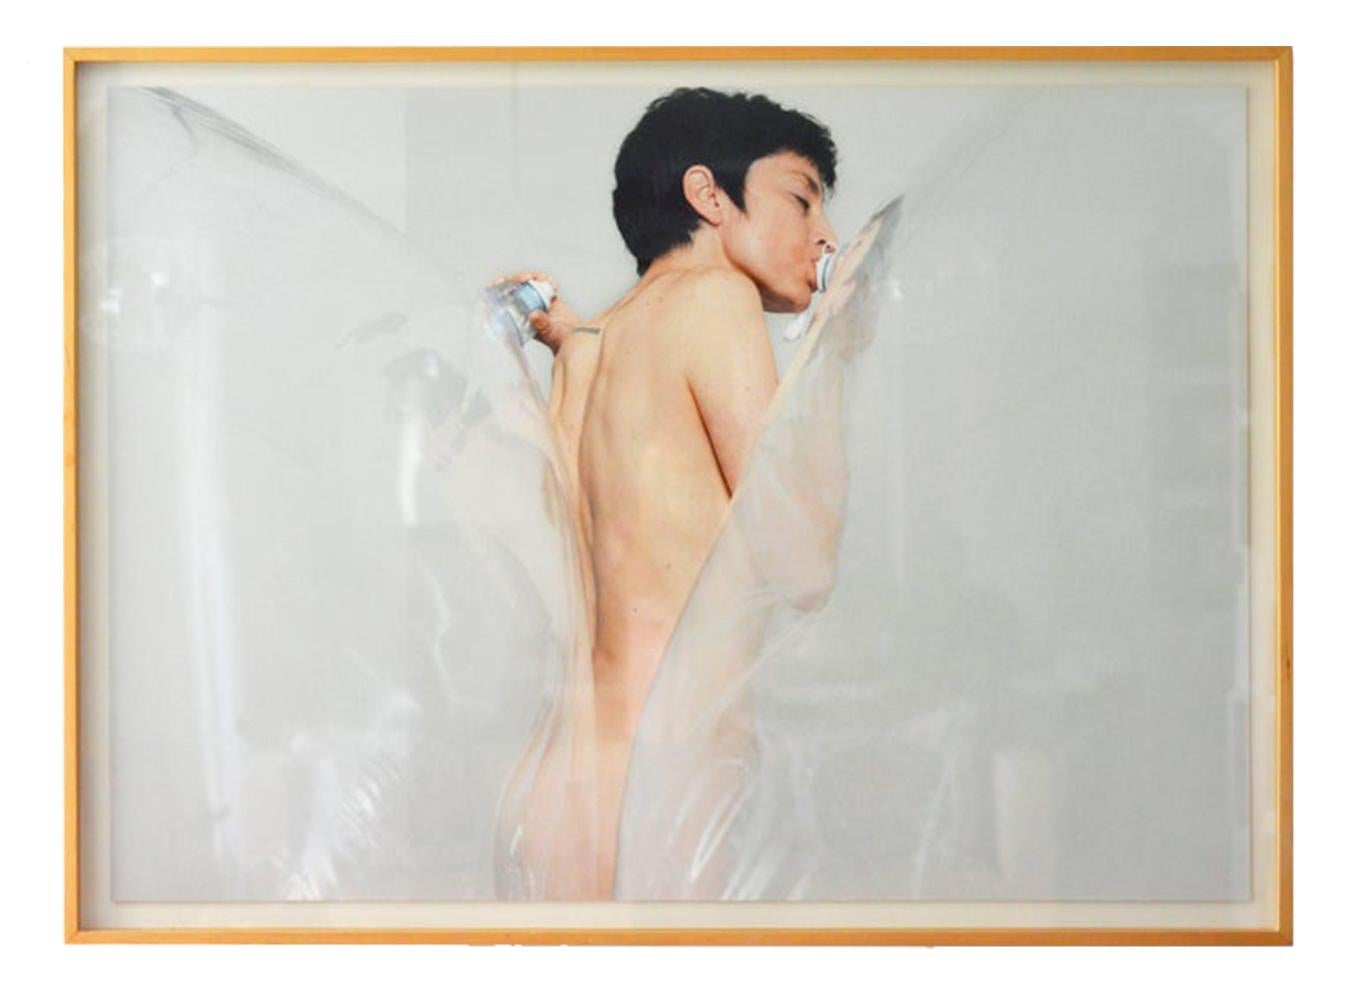 Der Kuss. Foto III. 2012  Standort Eins, New York. 
Individueller Pigmentdruck auf Museumskarton mit Trockenmontage
Größe: 44